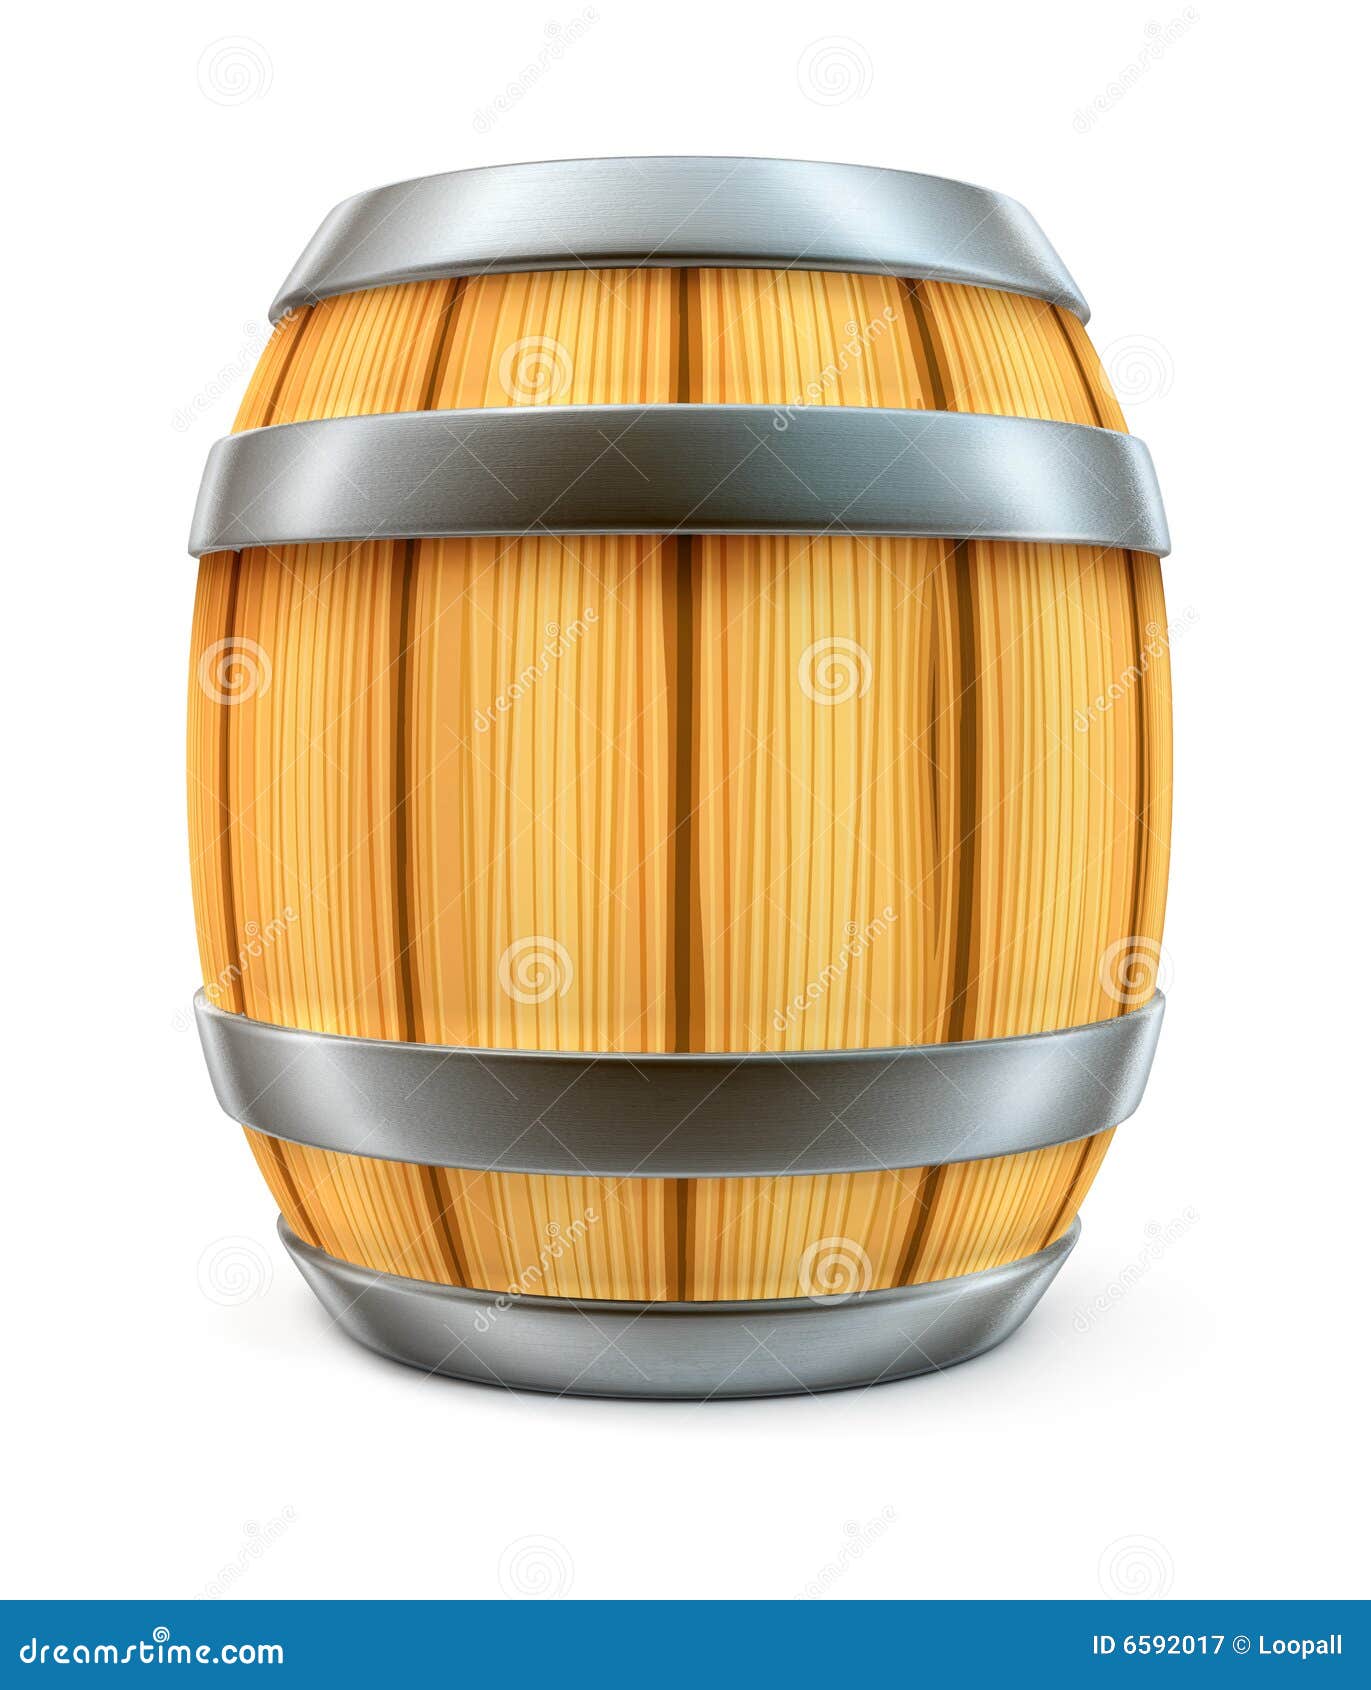 barril-de-madera-para-el-almacenaje-del-vino-y-de-la-cerveza-aislado-6592017.jpg